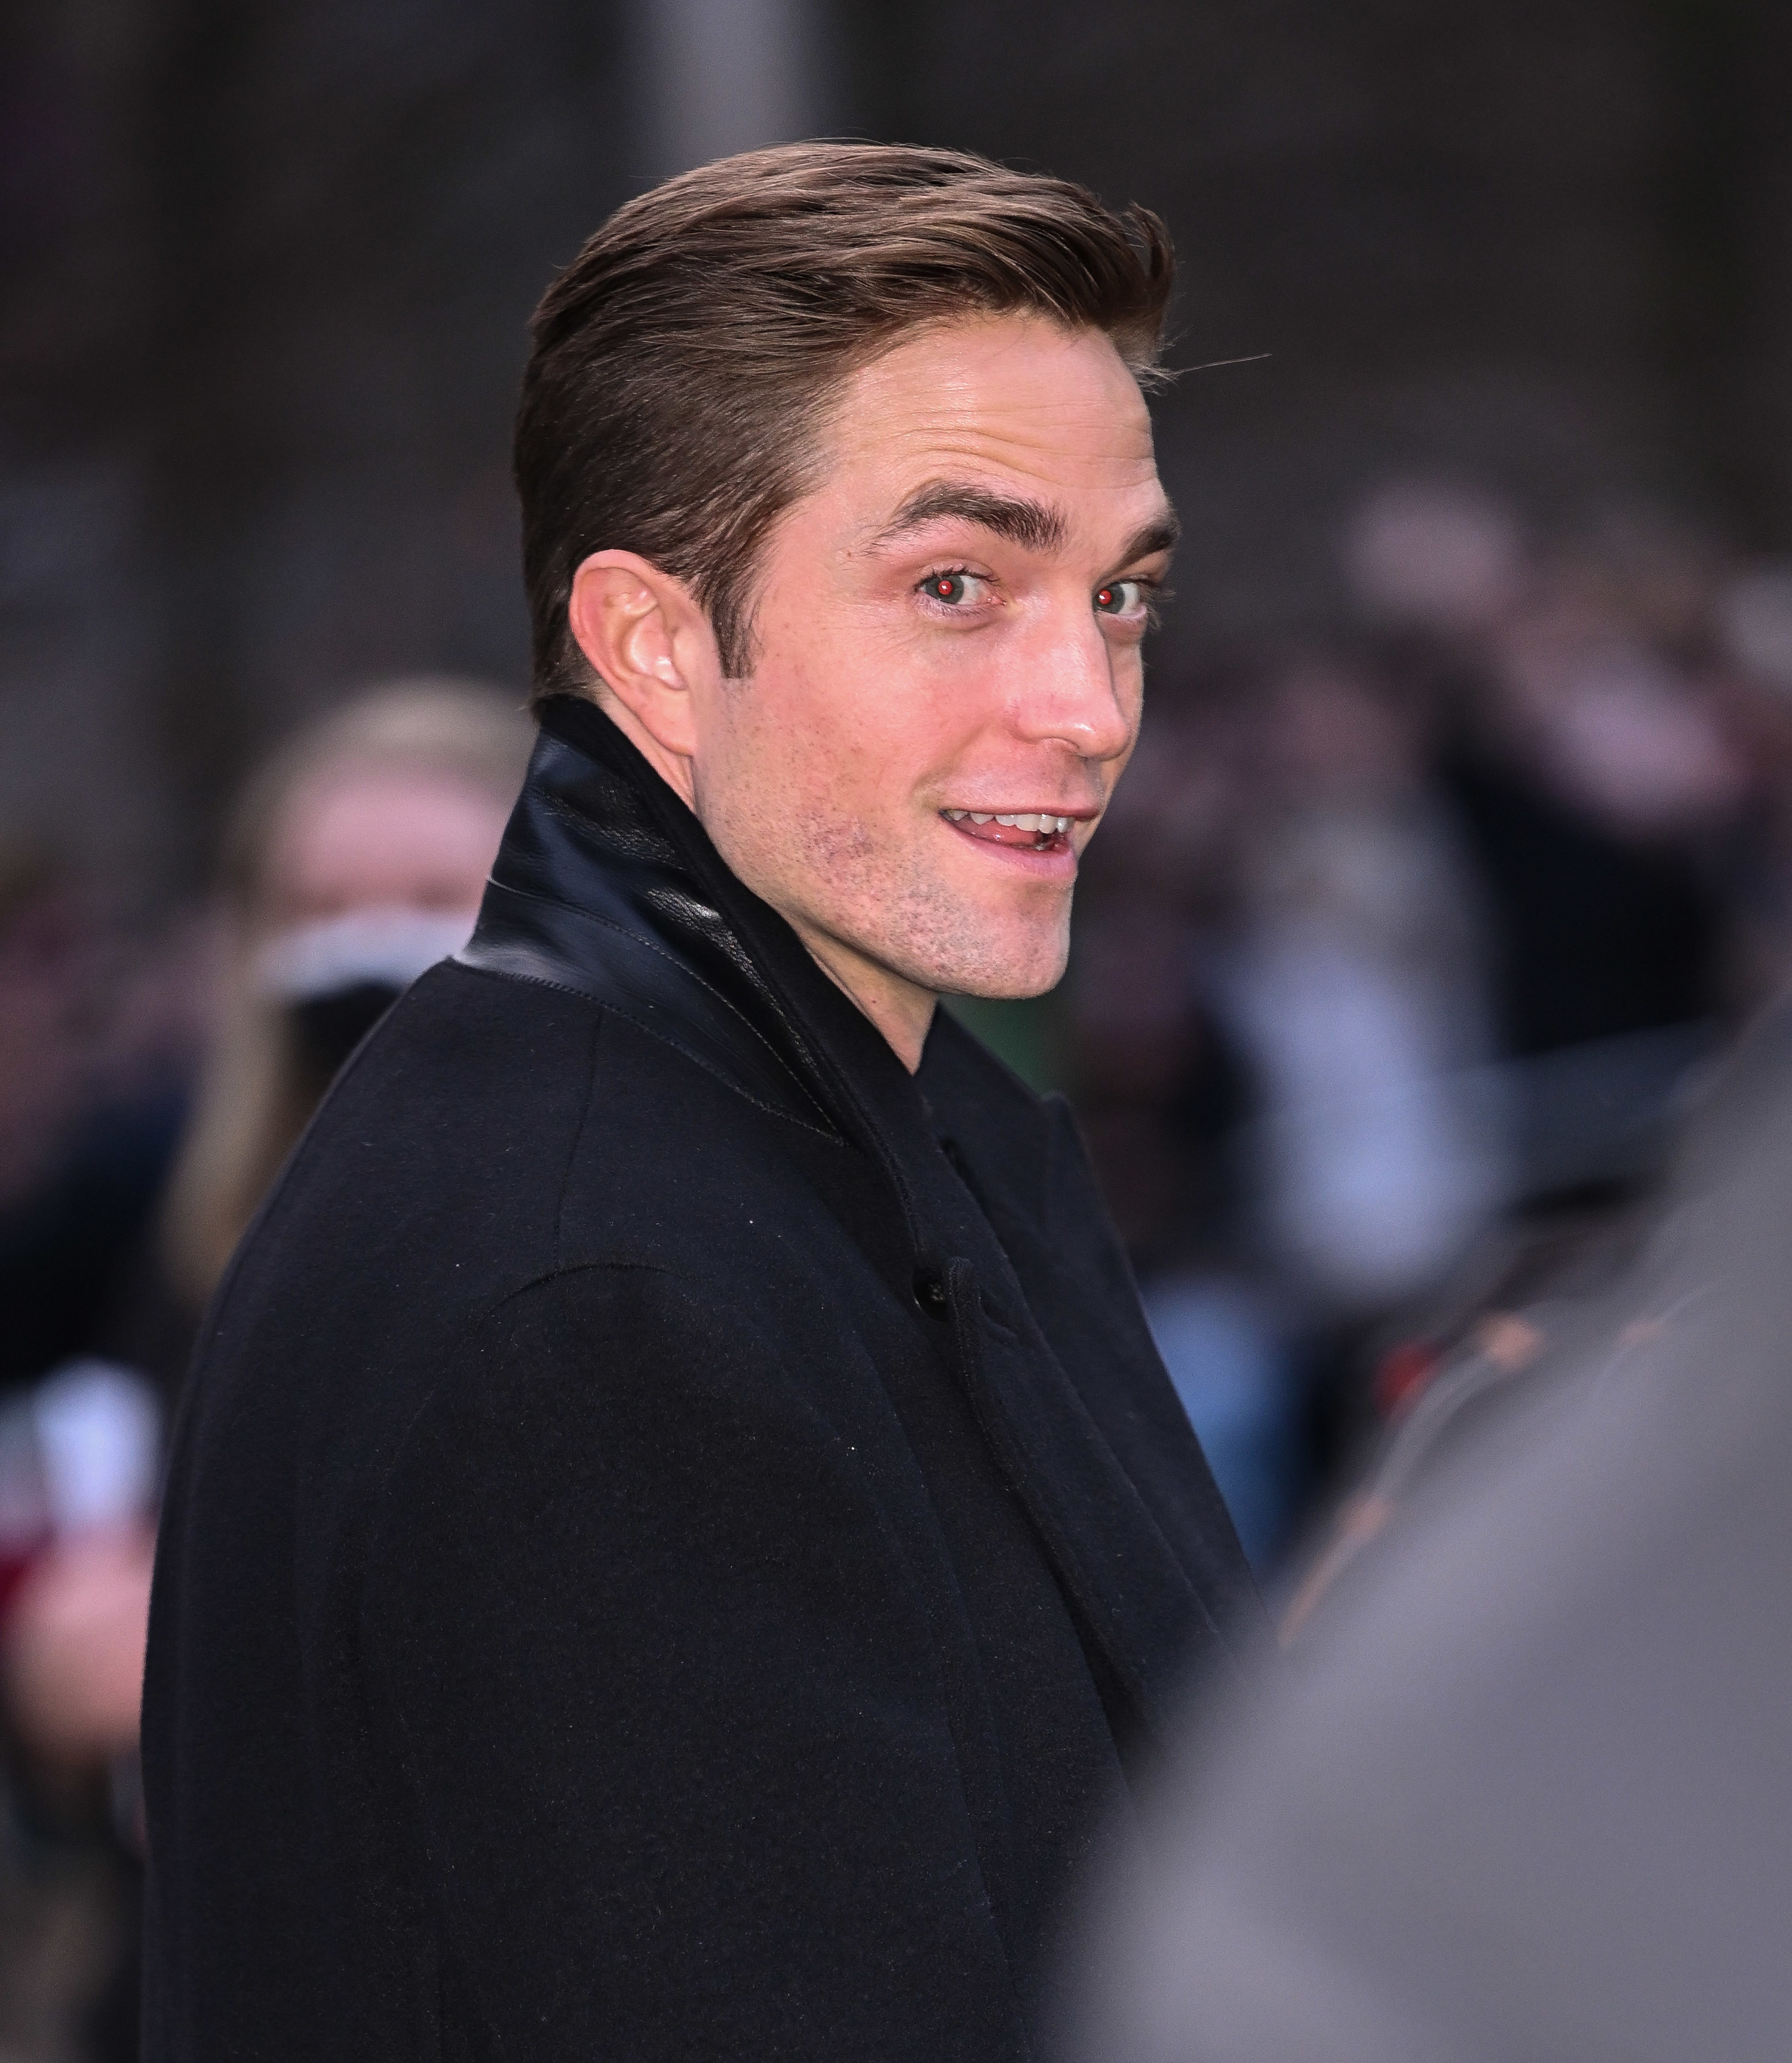 Closeup of Robert Pattinson